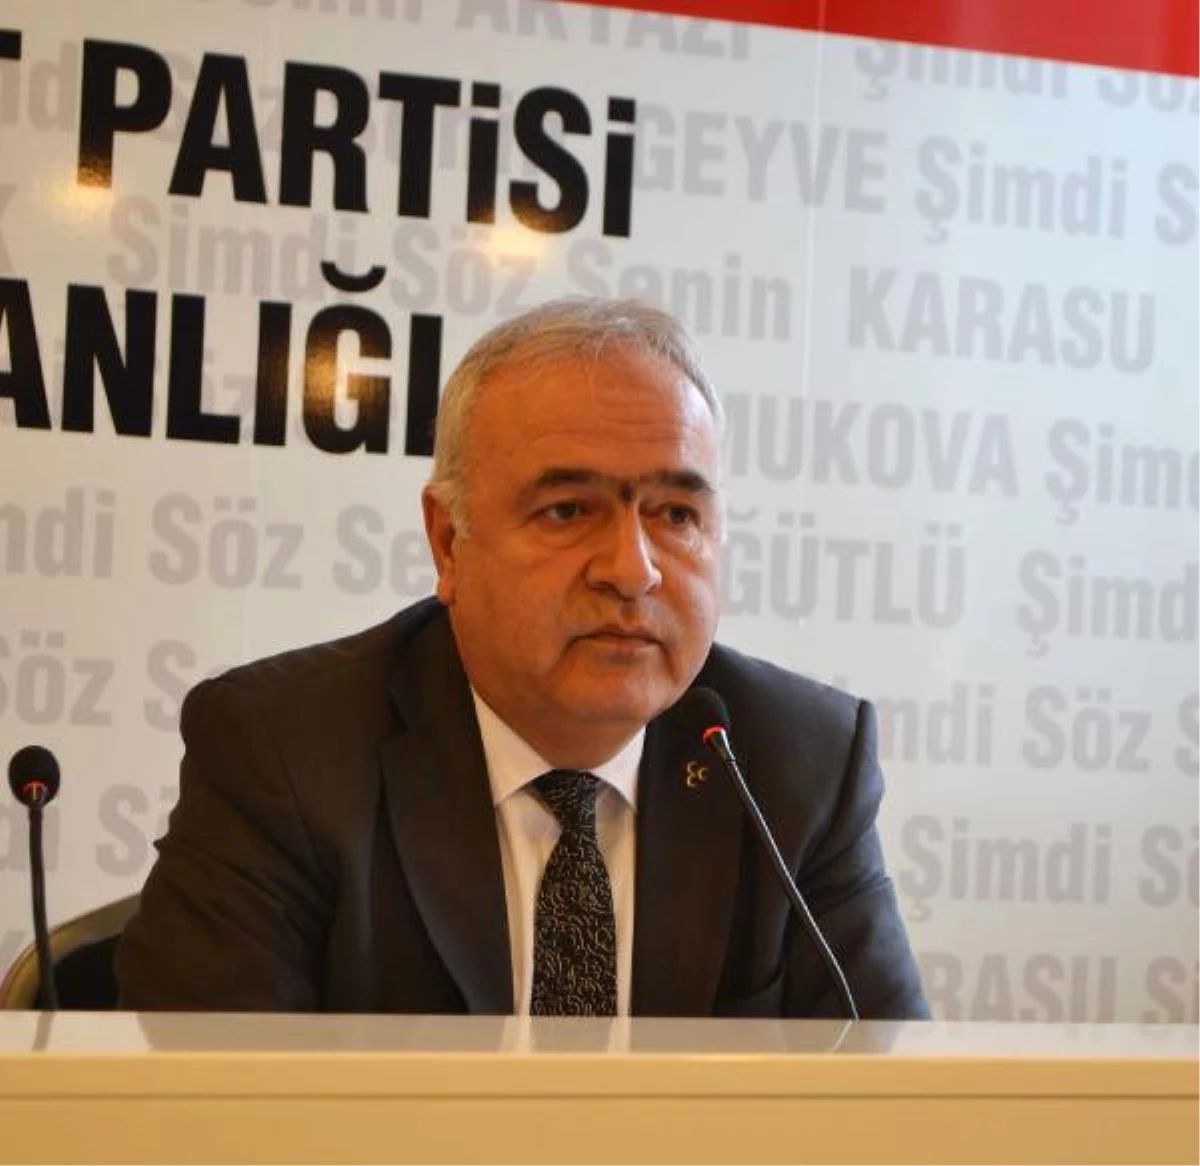 MHP Sakarya Eski İl Başkanı Partisinden İstifa Etti